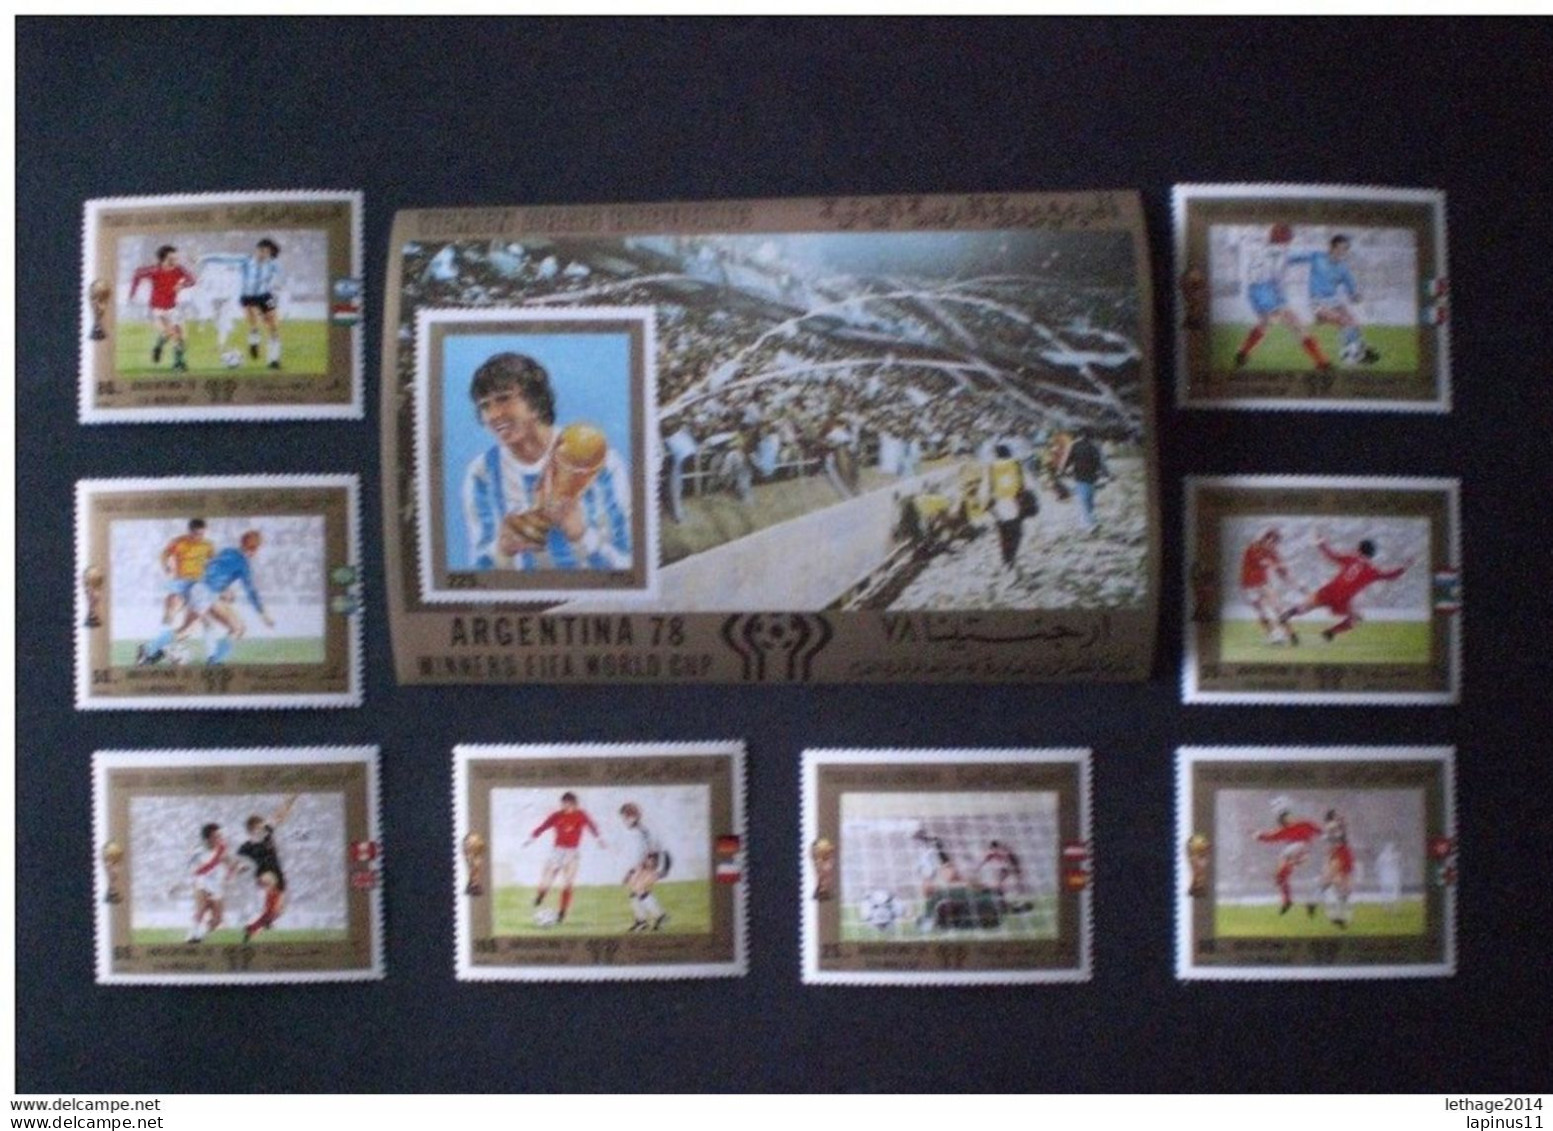 STAMPS YEMEN 1980 FOOTBALL WORLD CHAMPIONSHIP ARGENTINA 78 MICHEAL CATALOGUE 1592/1599 - 1628 SHEET MNH - Yemen